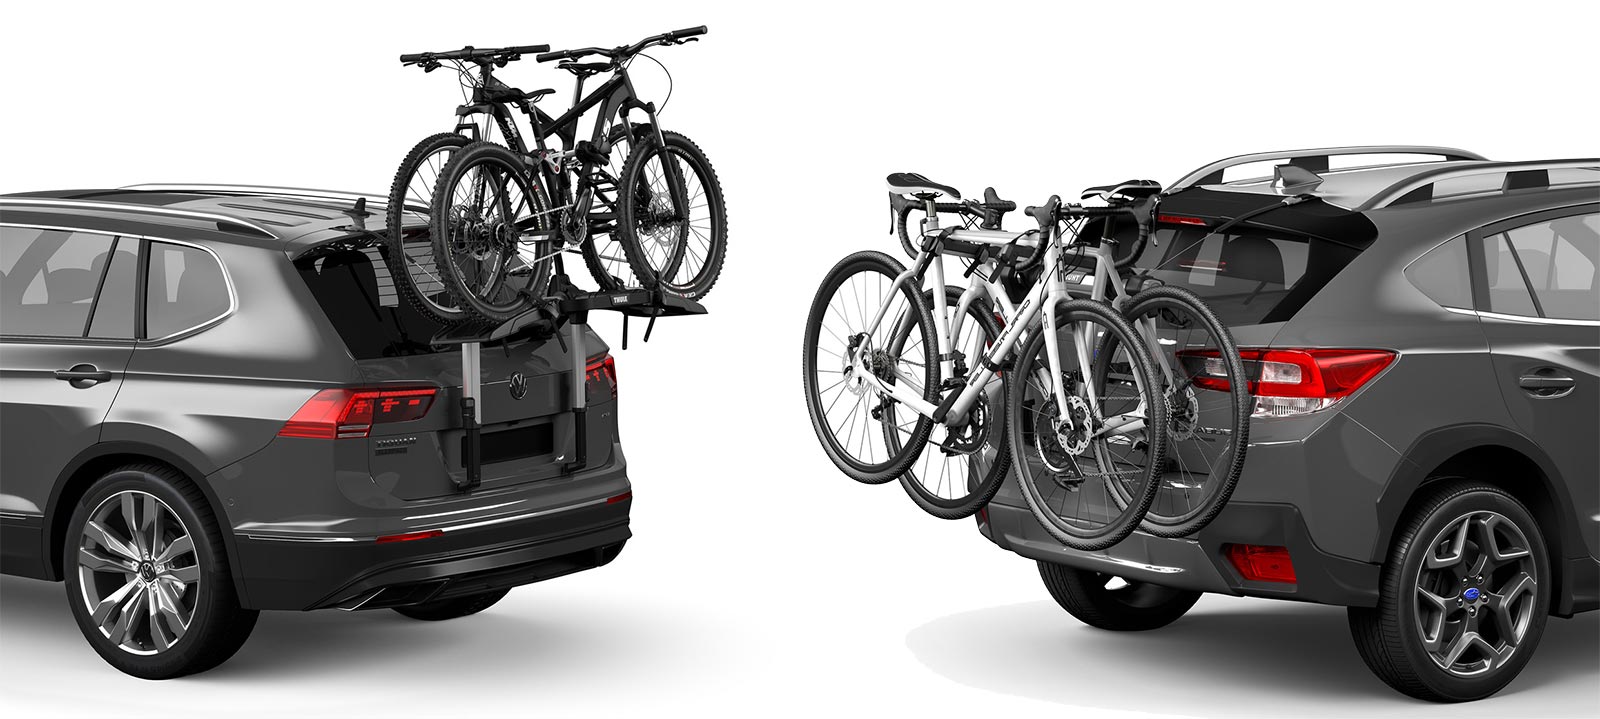 Porte-vélos : hayon, toit ou attelage quel type choisir ?